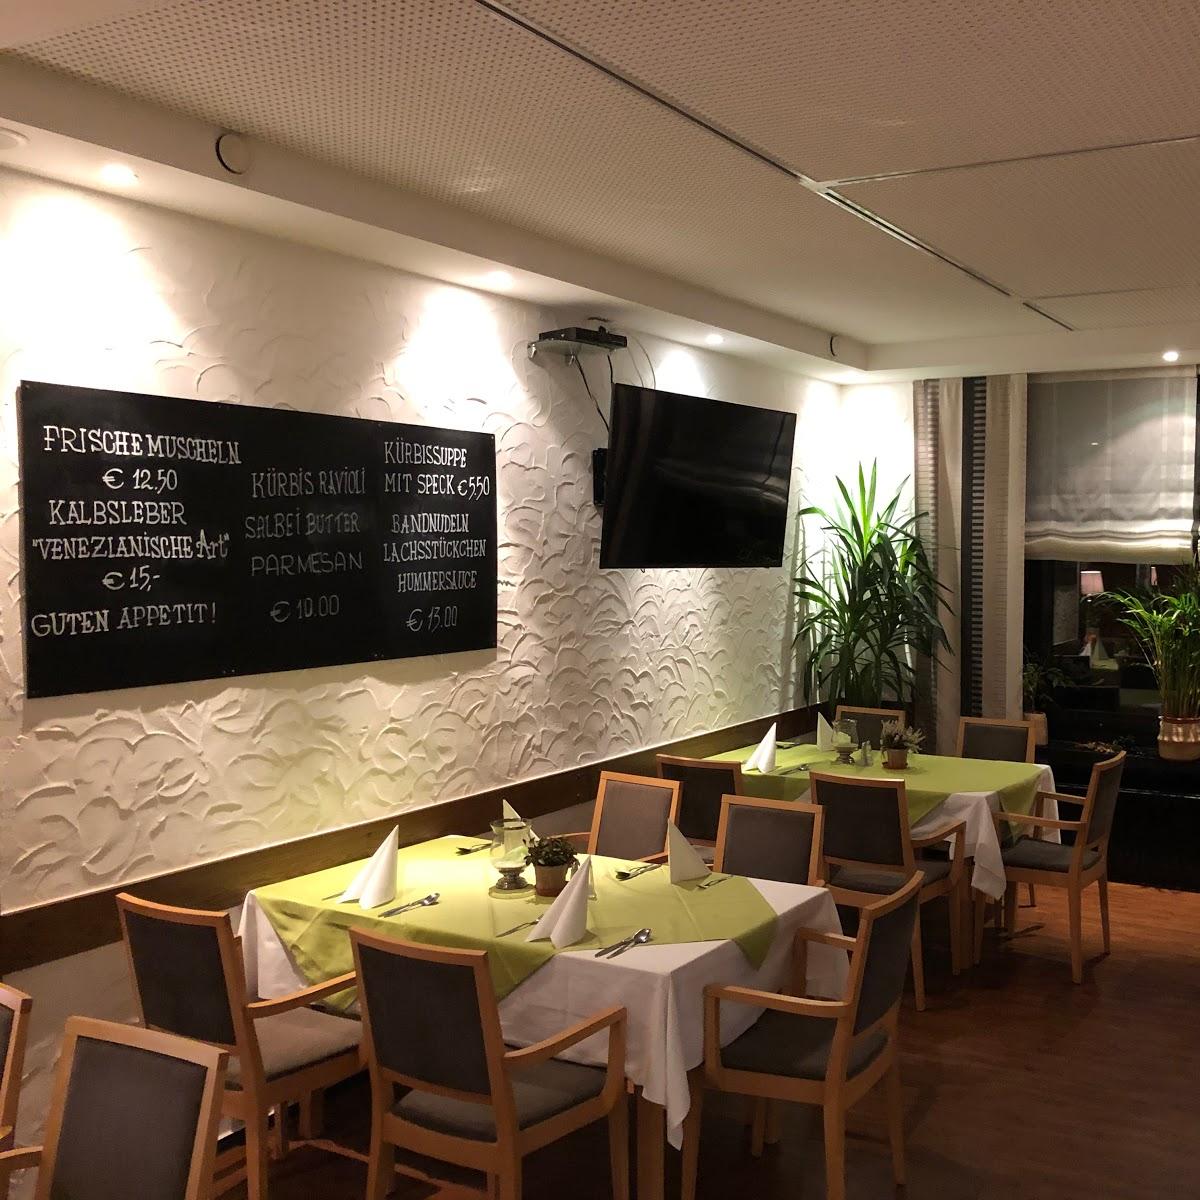 Restaurant "Bistro & Pizzeria Carpaccio" in Detmold